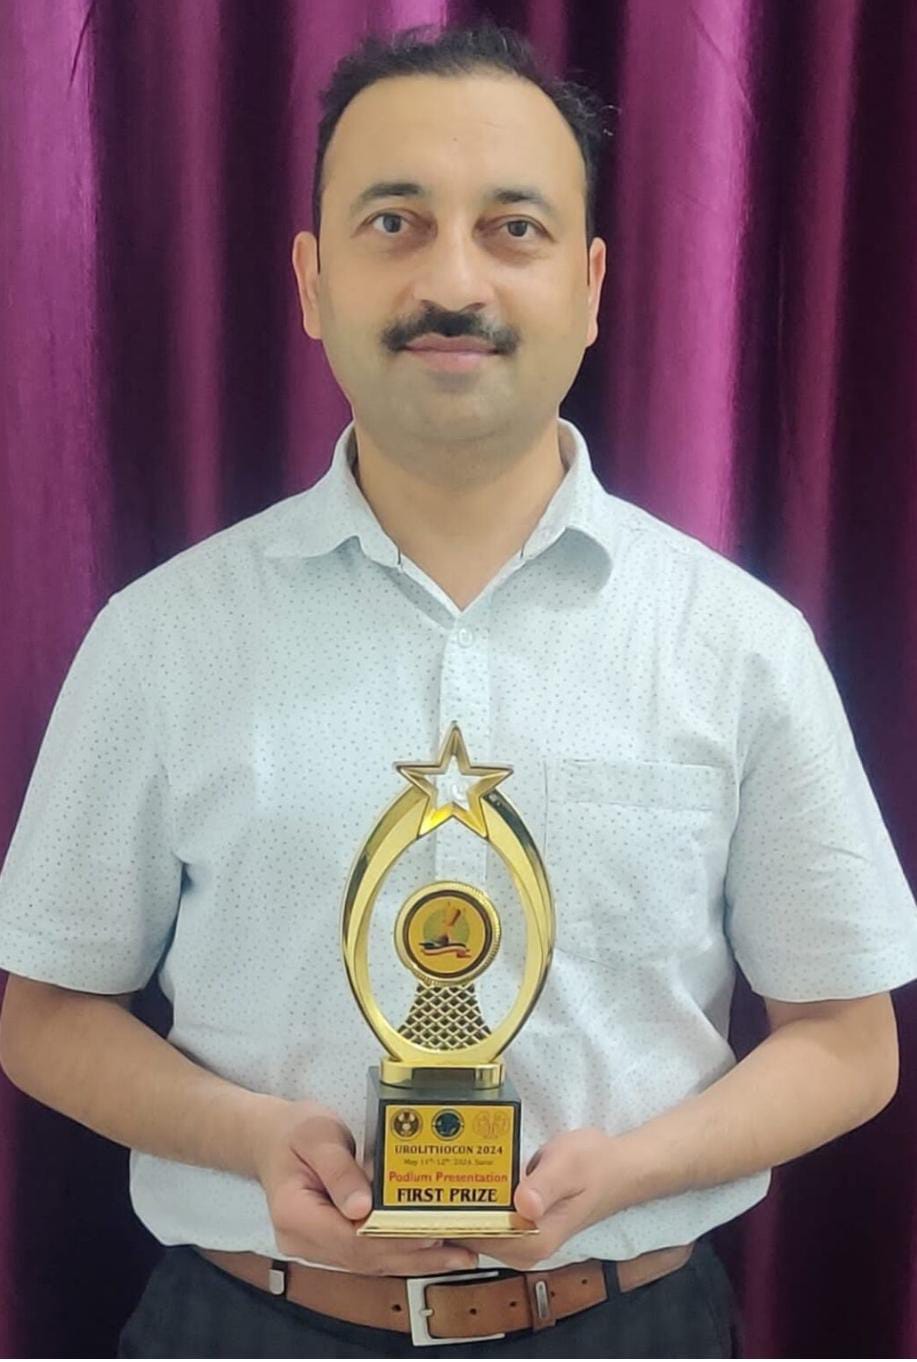 श्री महंत इन्दिरेश अस्पताल के वरिष्ठ यूरोलॉजिस्ट डॉ. विमल कुमार दीक्षित ने सुपाइन पी.सी.एन.एल. तकनीक पर आधारित पेपर प्रस्तुतिकरण में प्रथम स्थान प्राप्त किया है